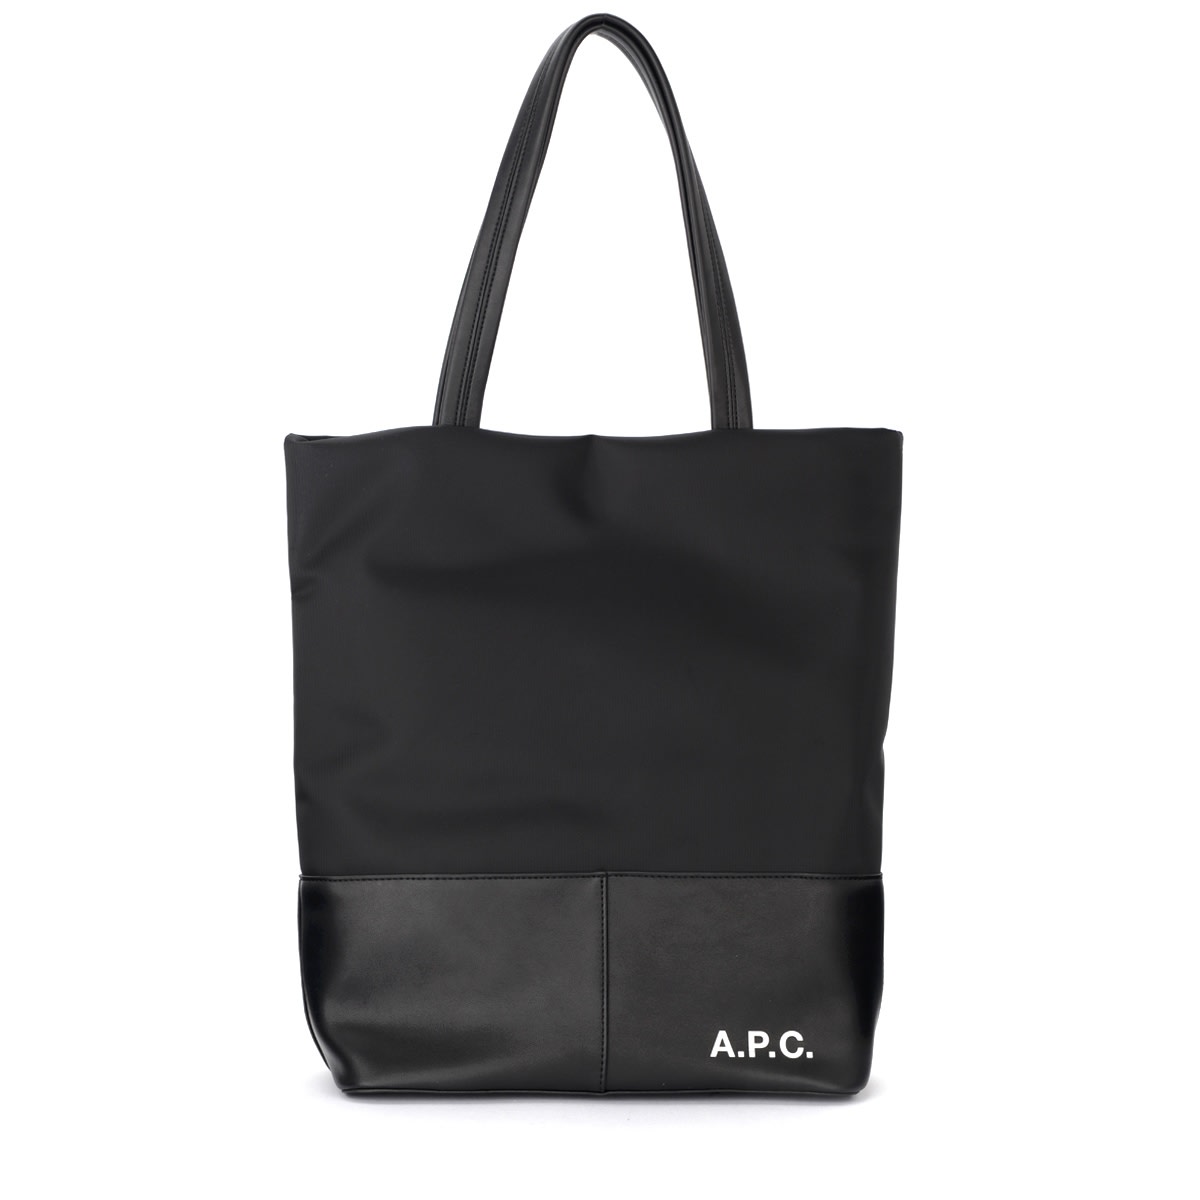 A.p.c. Camden Black Shopping Bag